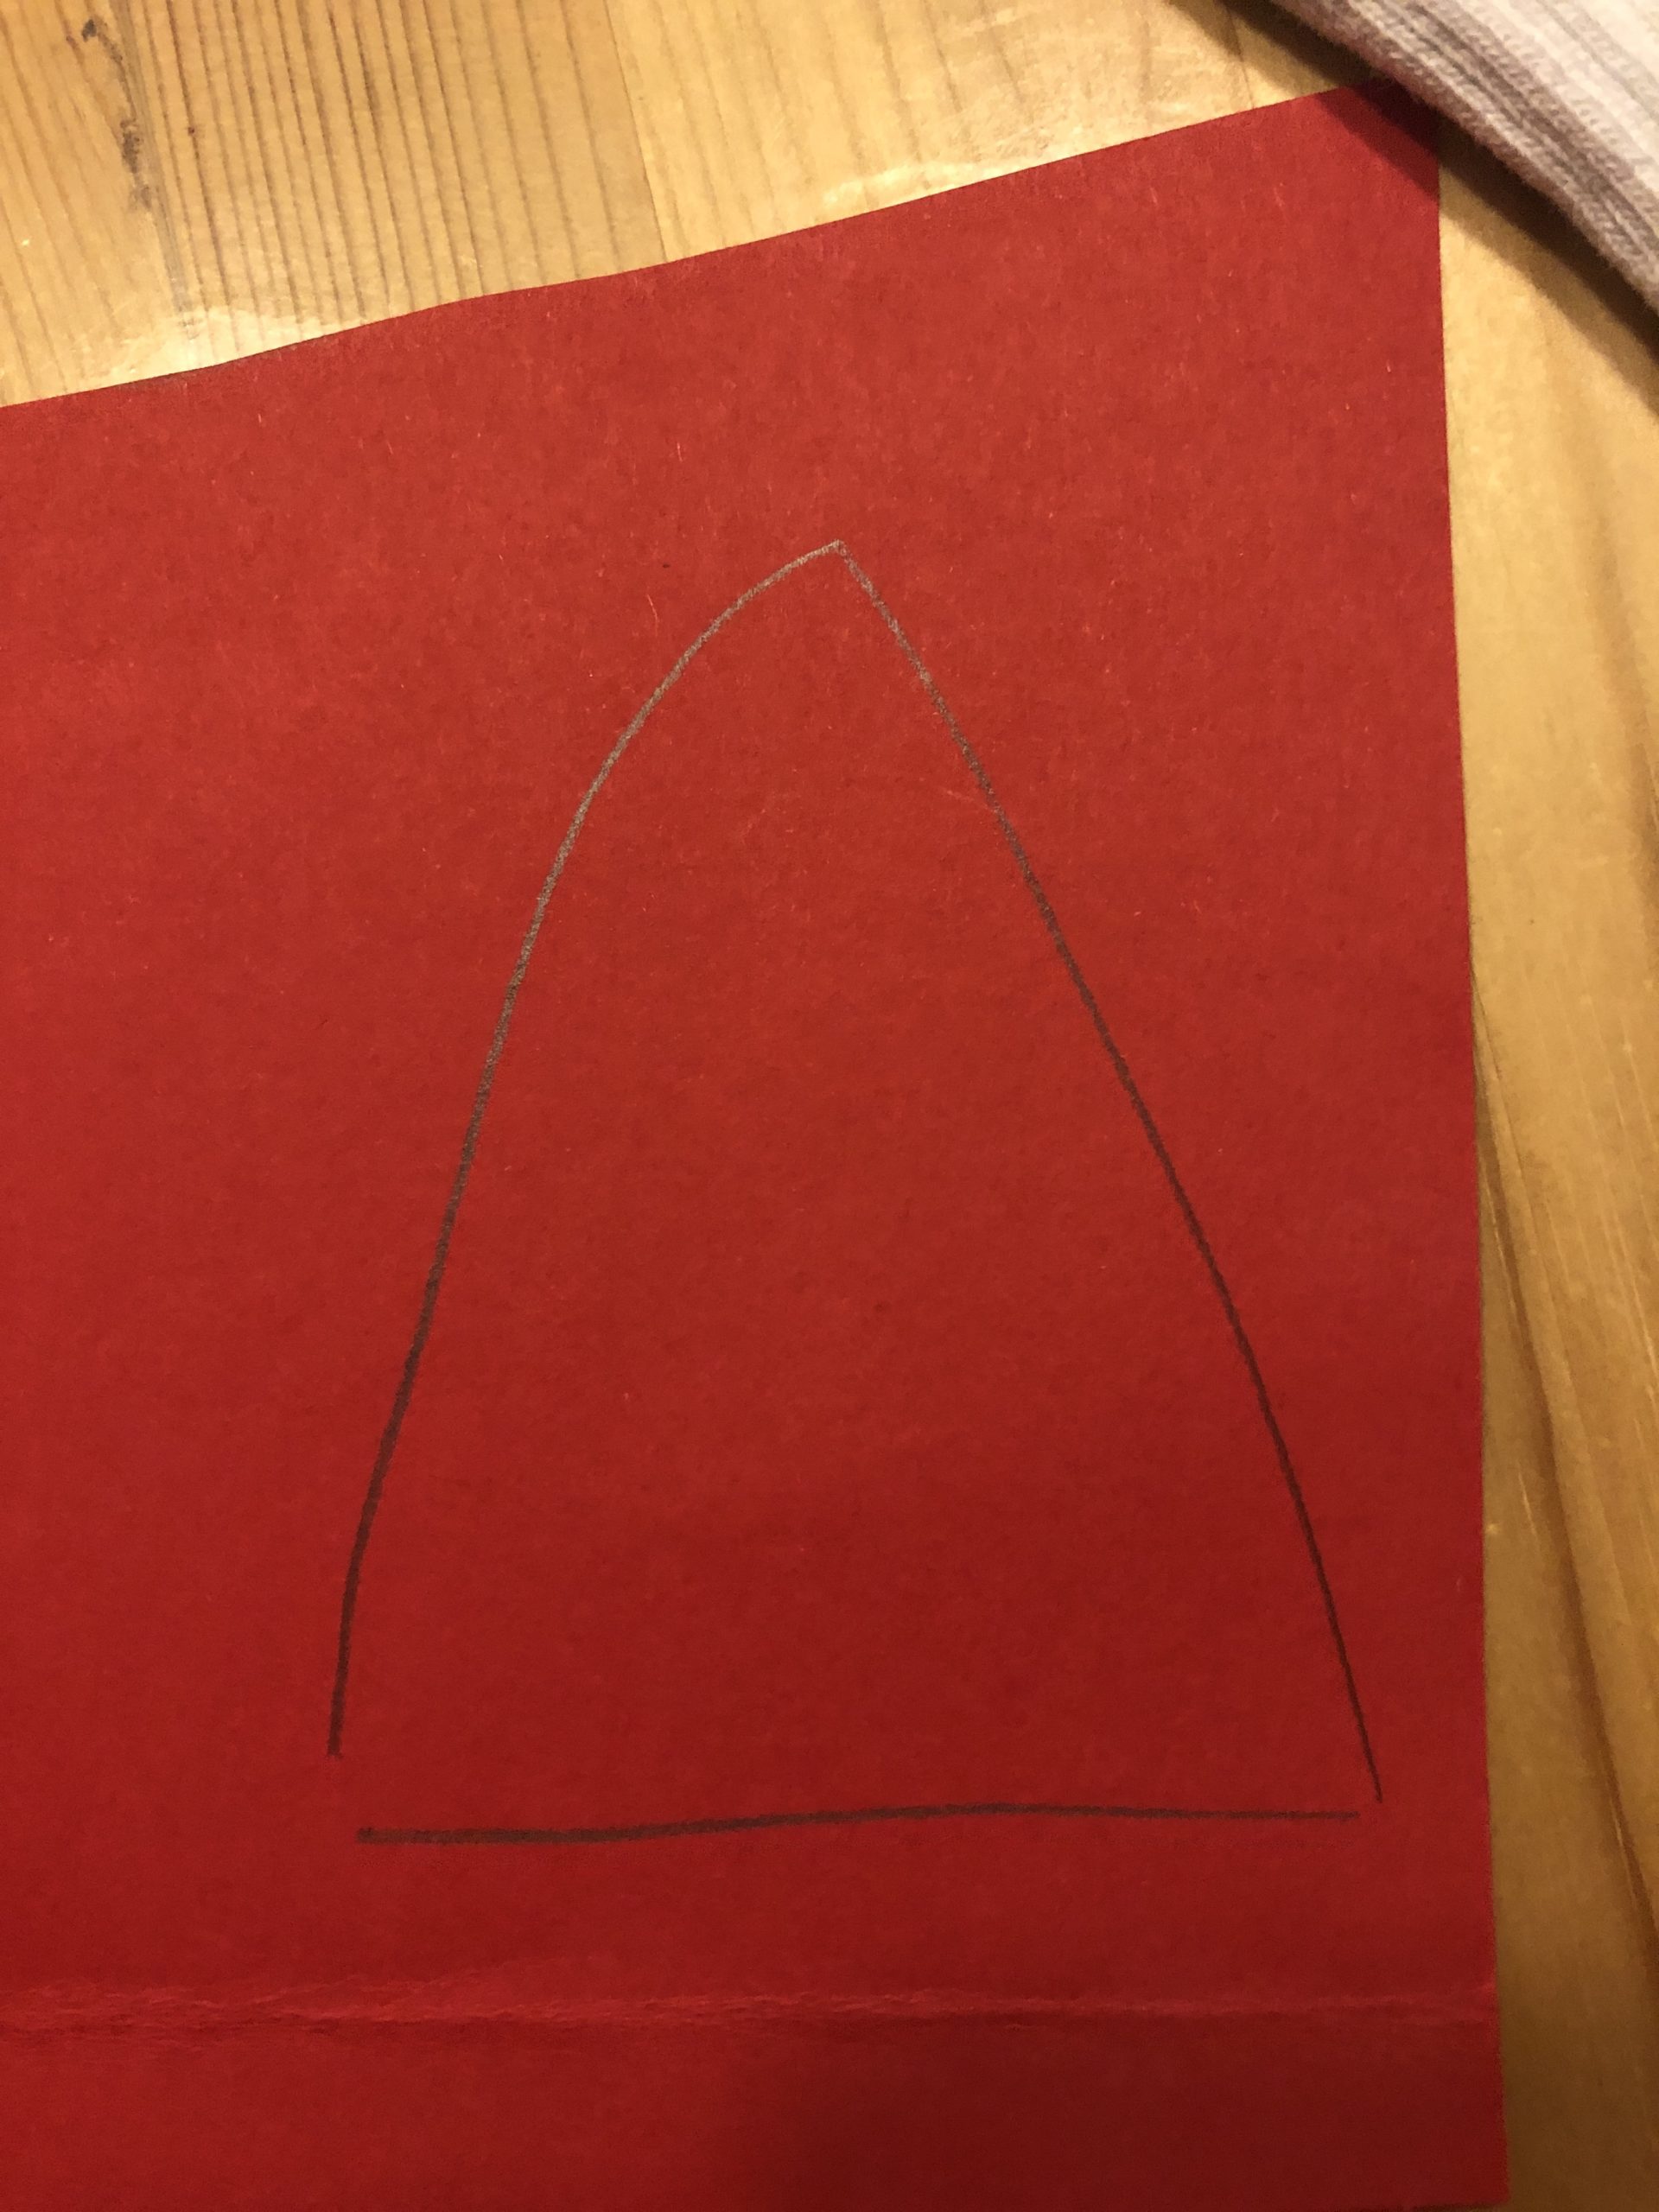 Bild zum Schritt 3 für das Bastel- und DIY-Abenteuer für Kinder: 'Auf den roten Fotokarton malt ihr jetzt eine Spitze Nikolausmütze...'